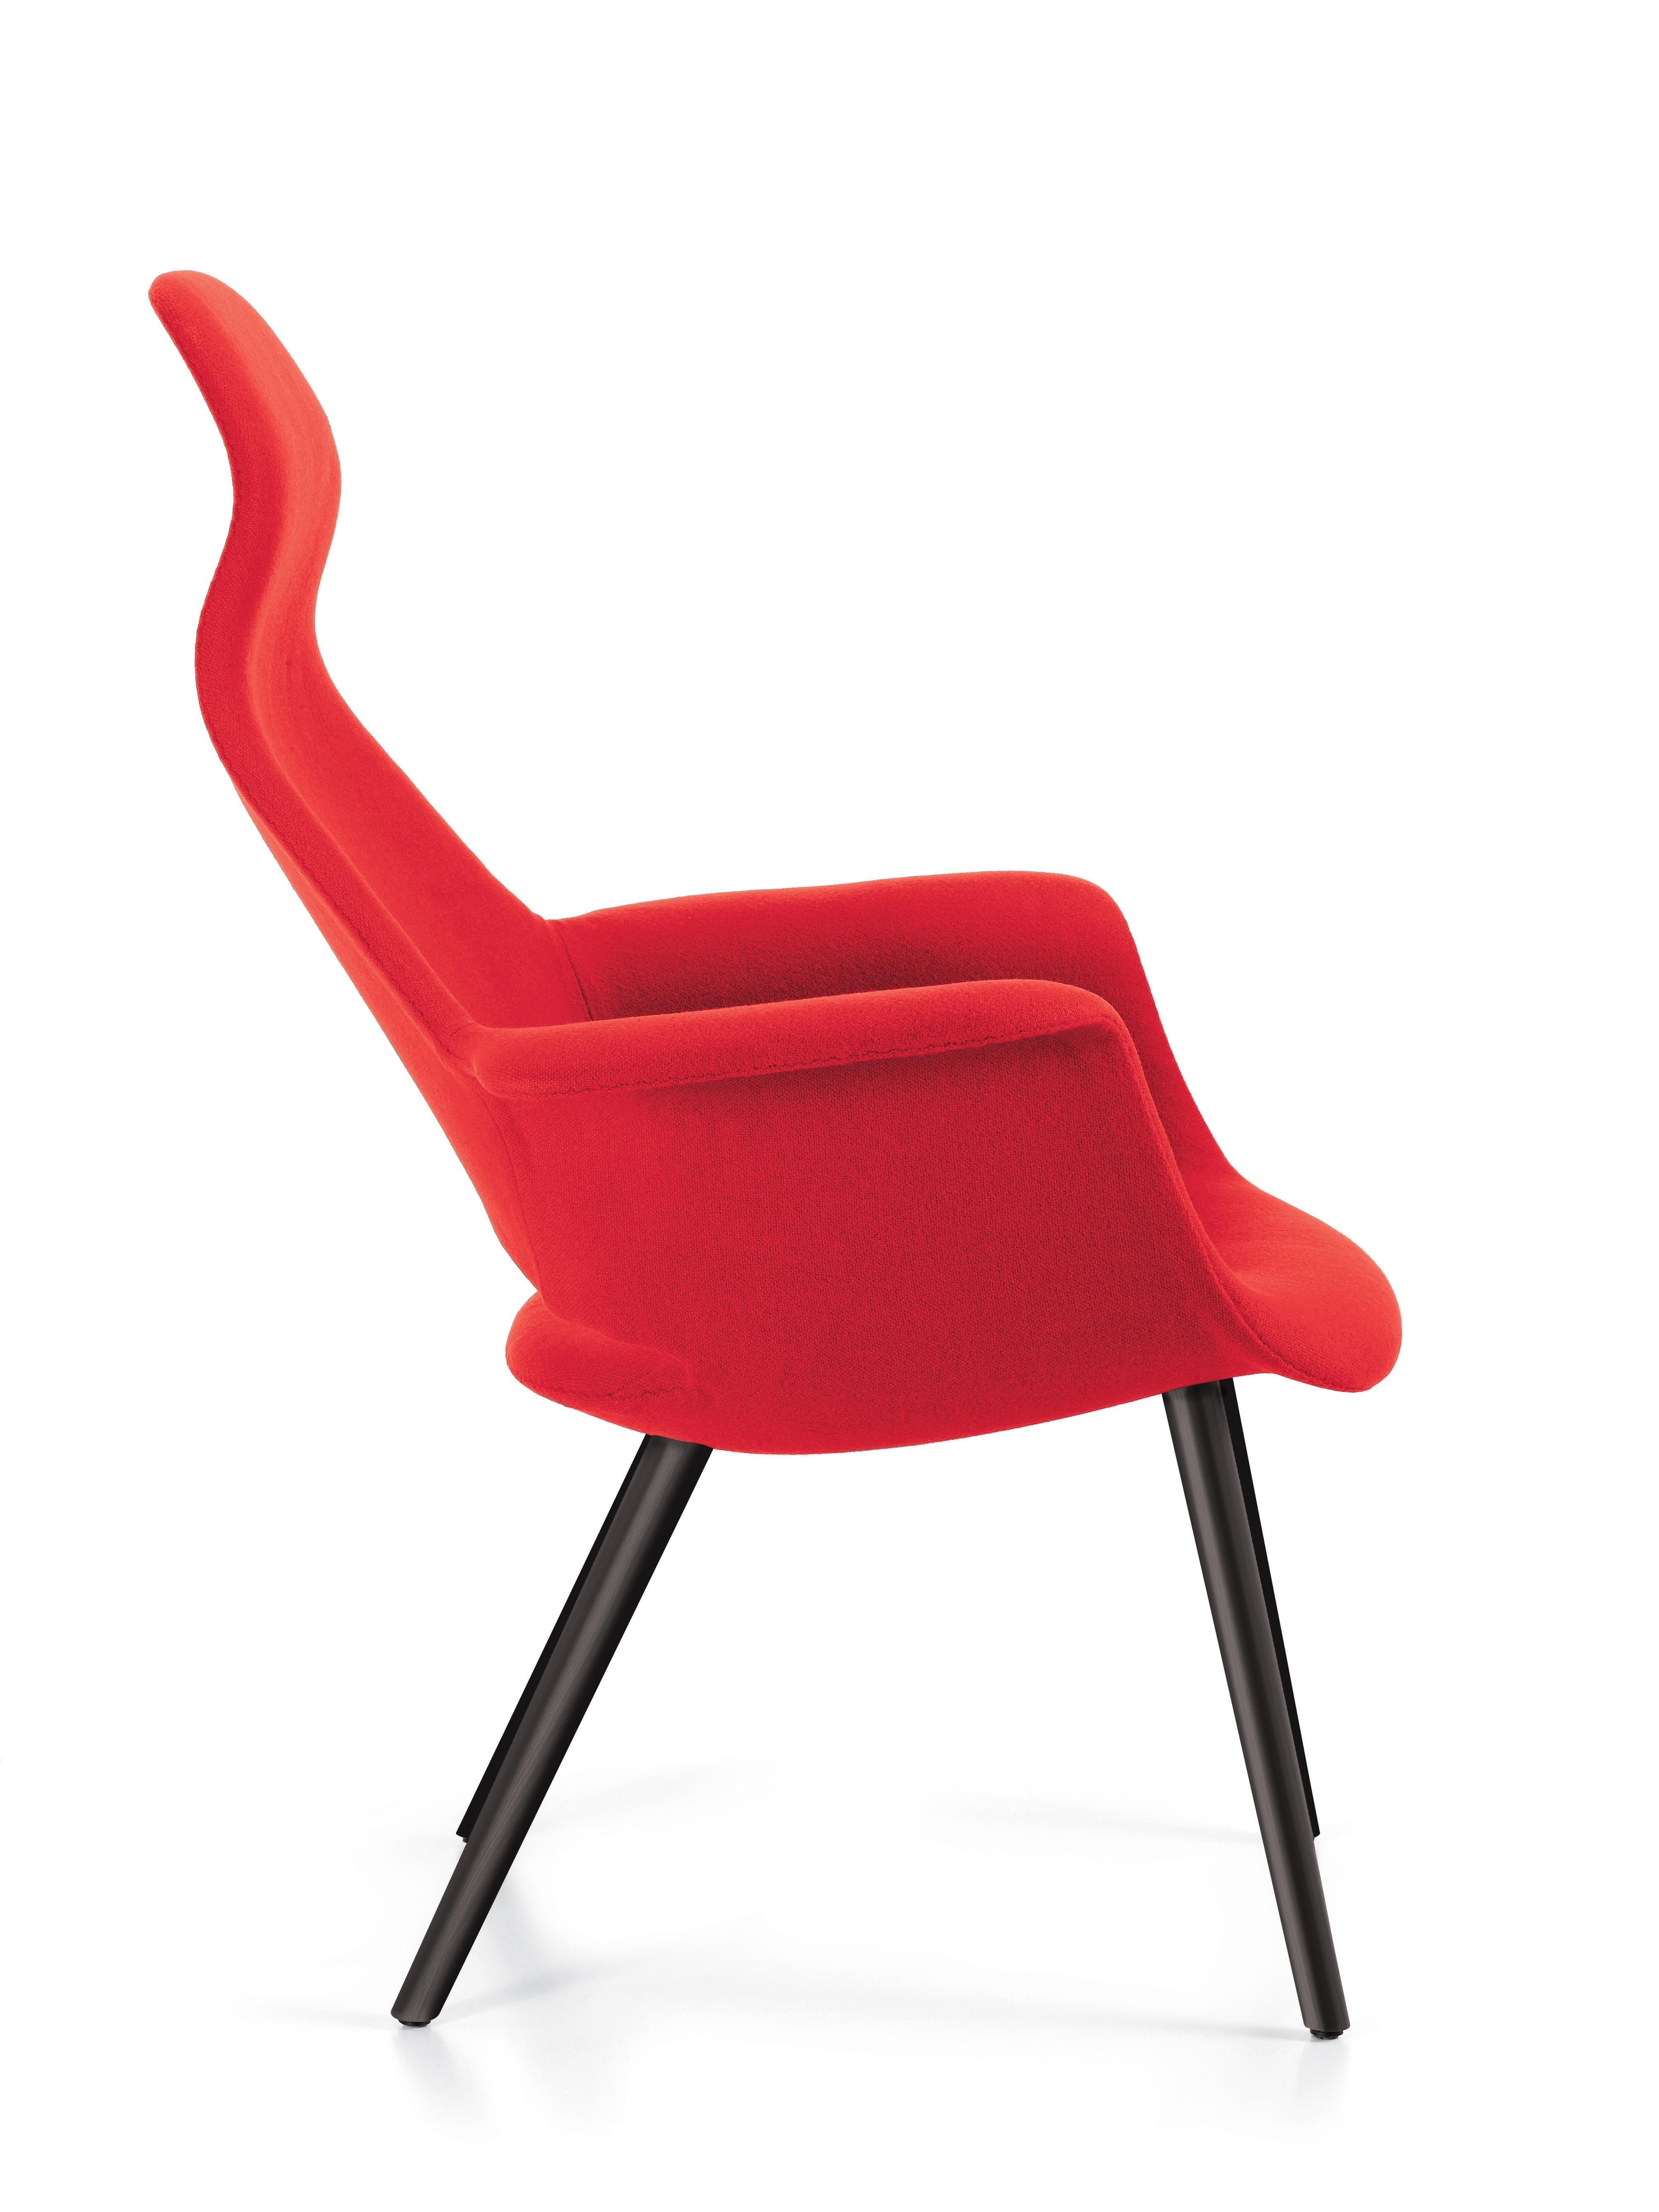 Diese Artikel sind derzeit nur in den Vereinigten Staaten erhältlich.

Der Organic Chair - ein kleiner und bequemer Lesesessel - wurde in mehreren Versionen für den 1940 vom Museum of Modern Art in New York veranstalteten Wettbewerb 